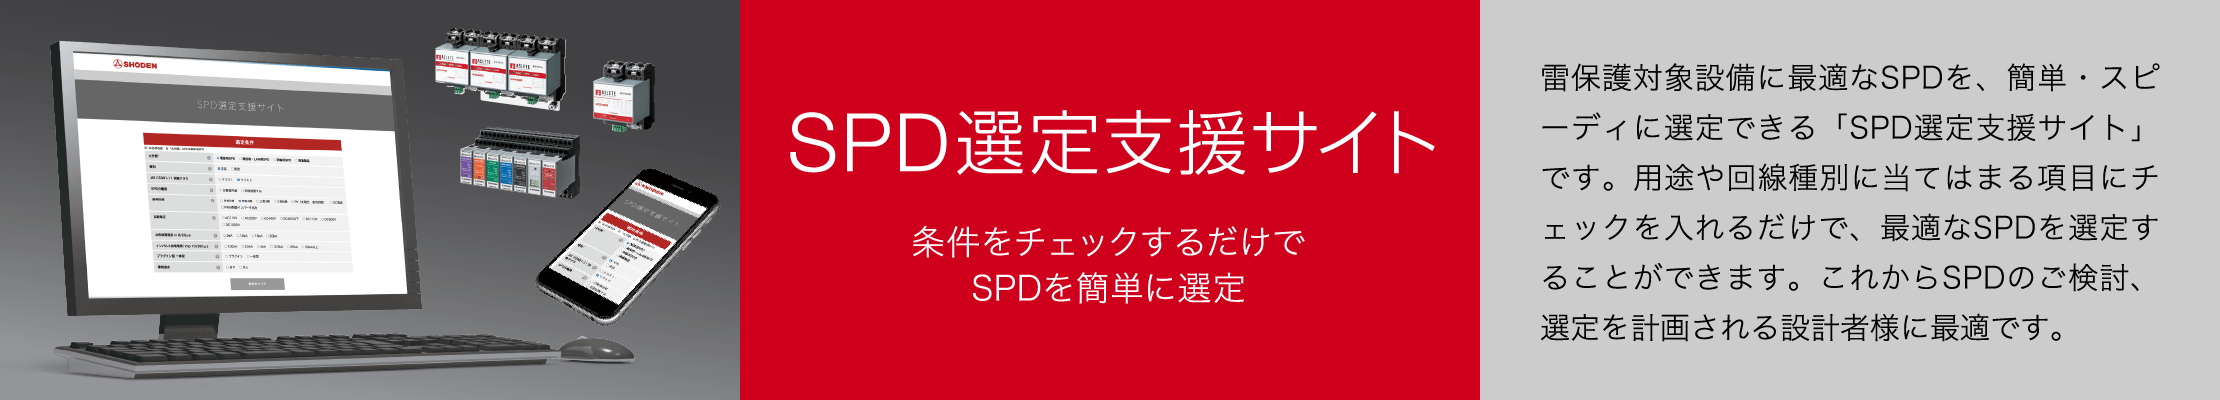 SPD選定支援サイト